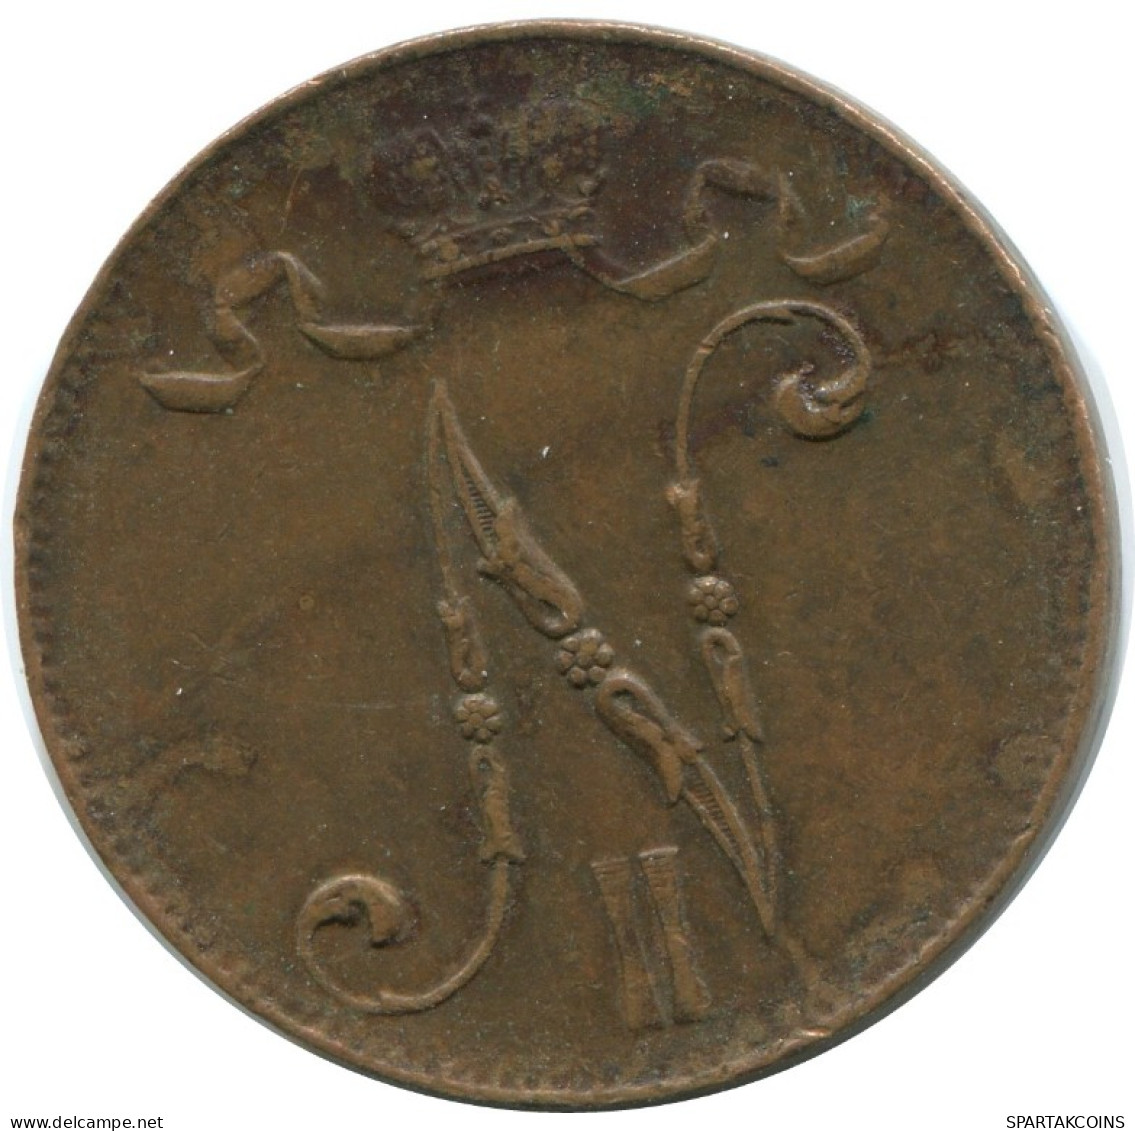 5 PENNIA 1916 FINLAND Coin RUSSIA EMPIRE #AB265.5.U.A - Finlande